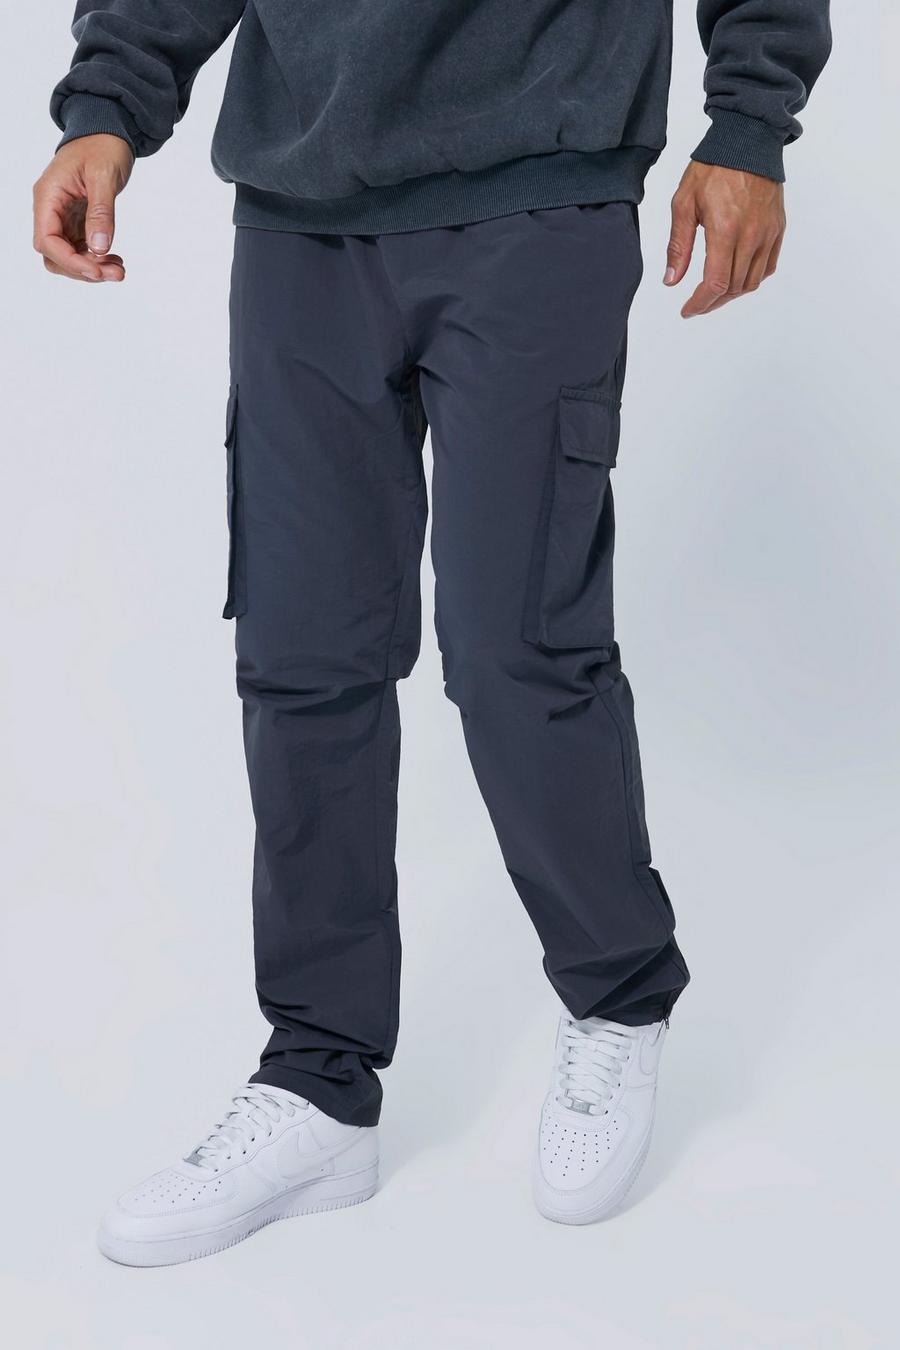 Pantaloni Cargo Tall dritti in nylon, Charcoal gris